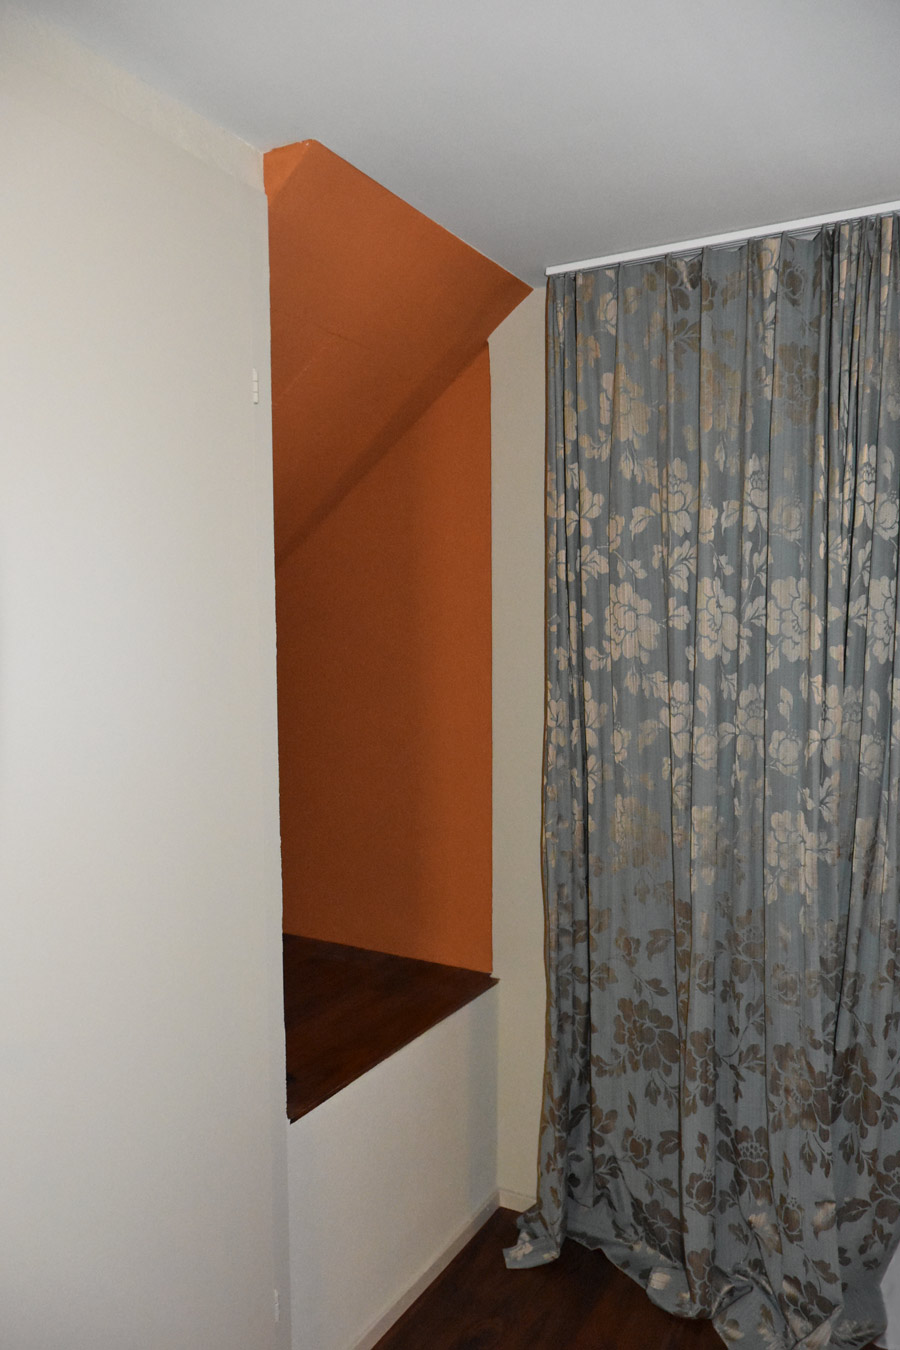 Farbgestaltung Elternschlafzimmer: Das Bild zeigt eine Raumnische neben dem Eingang zum Zimmer, die in einem weichen, herbstlichen Orange gestrichen ist.